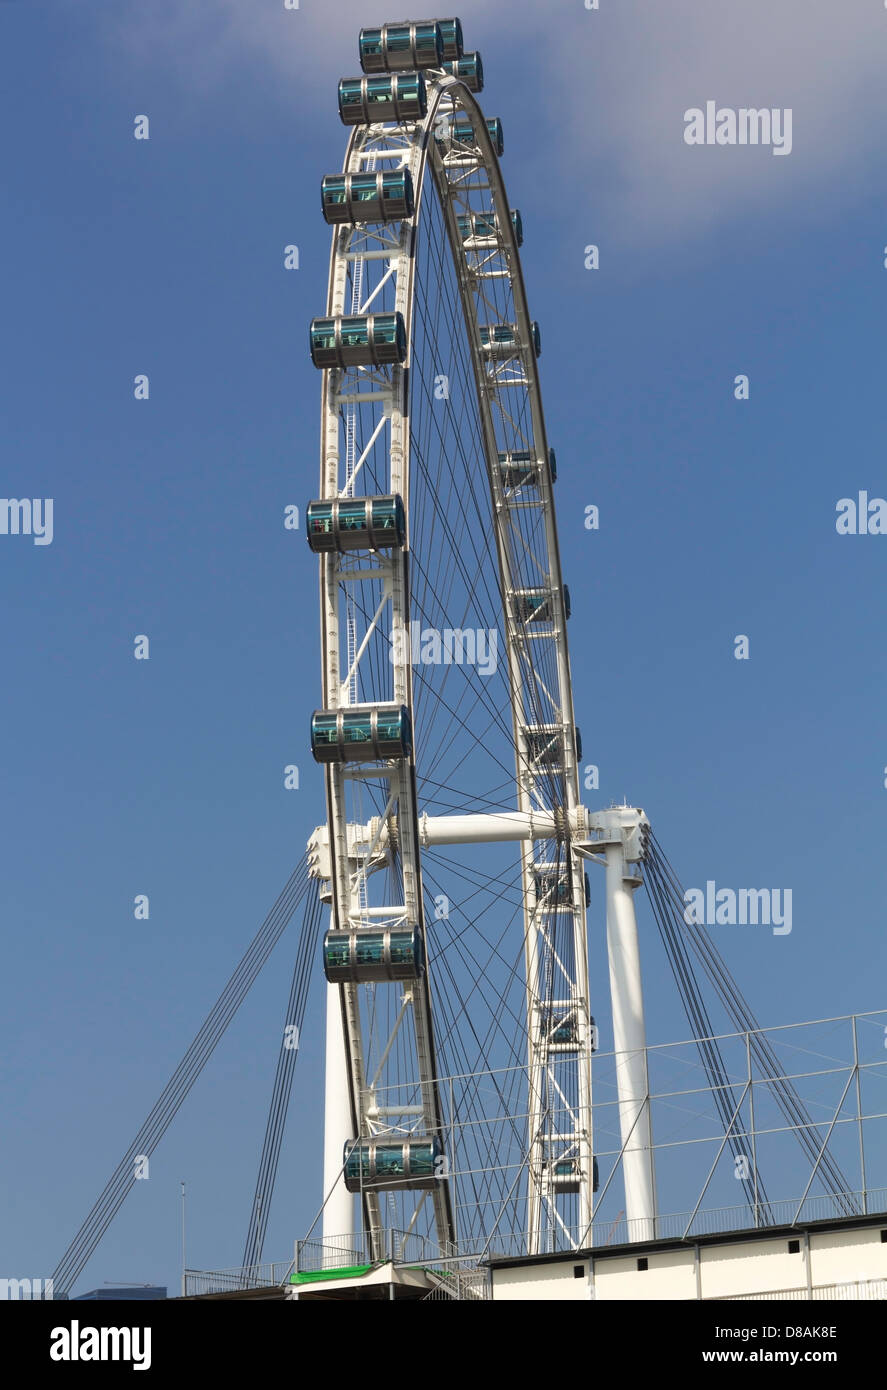 La sezione di ruota del Singapore Flyer con una sezione di nuvola bianca sulla parte superiore. Capsule chiaramente visibile, che trasportano i visitatori Foto Stock